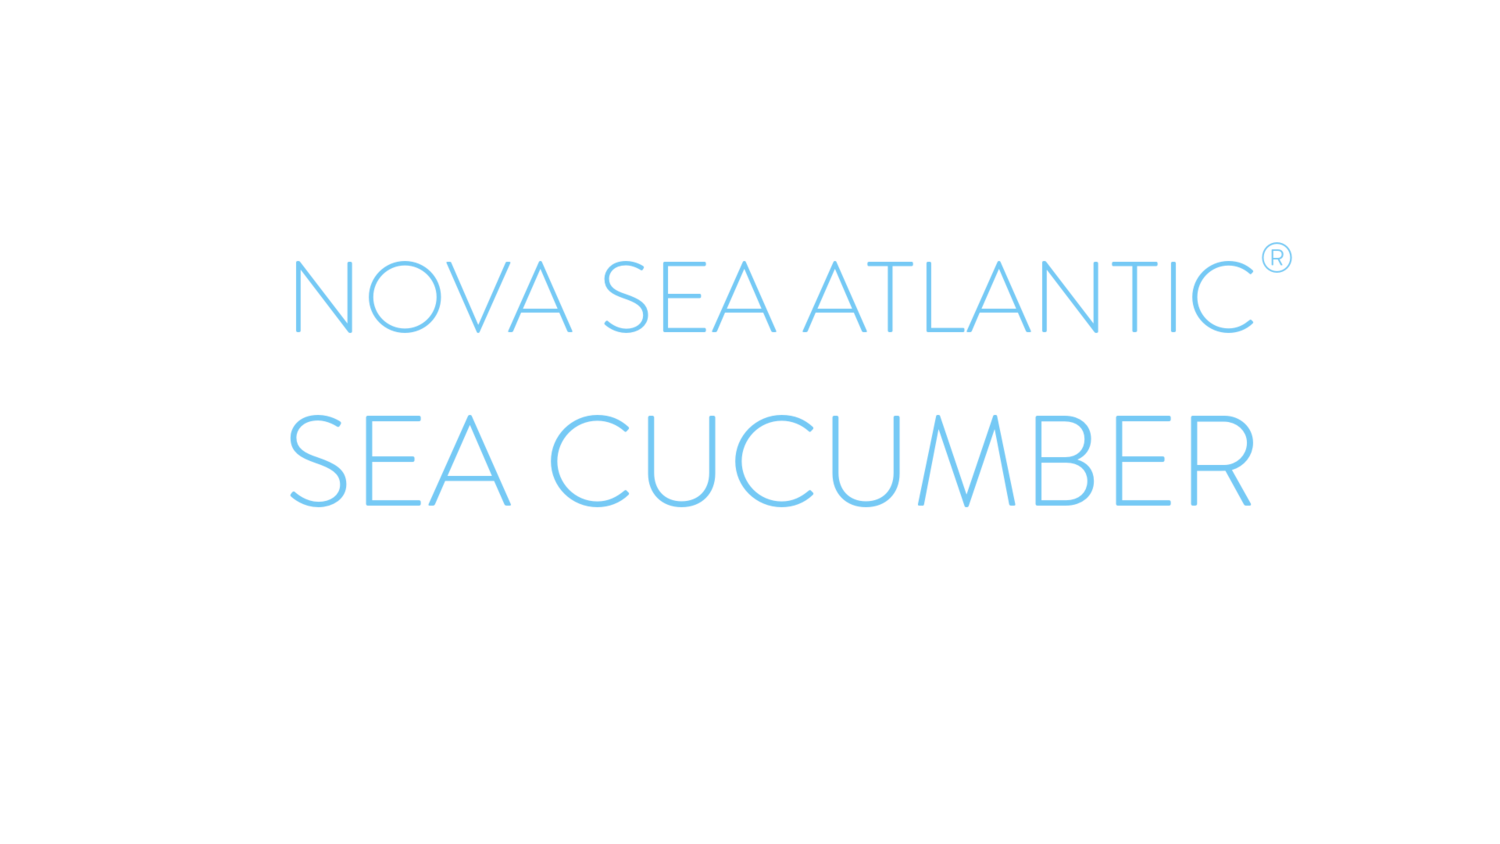 Nova Sea Atlantic